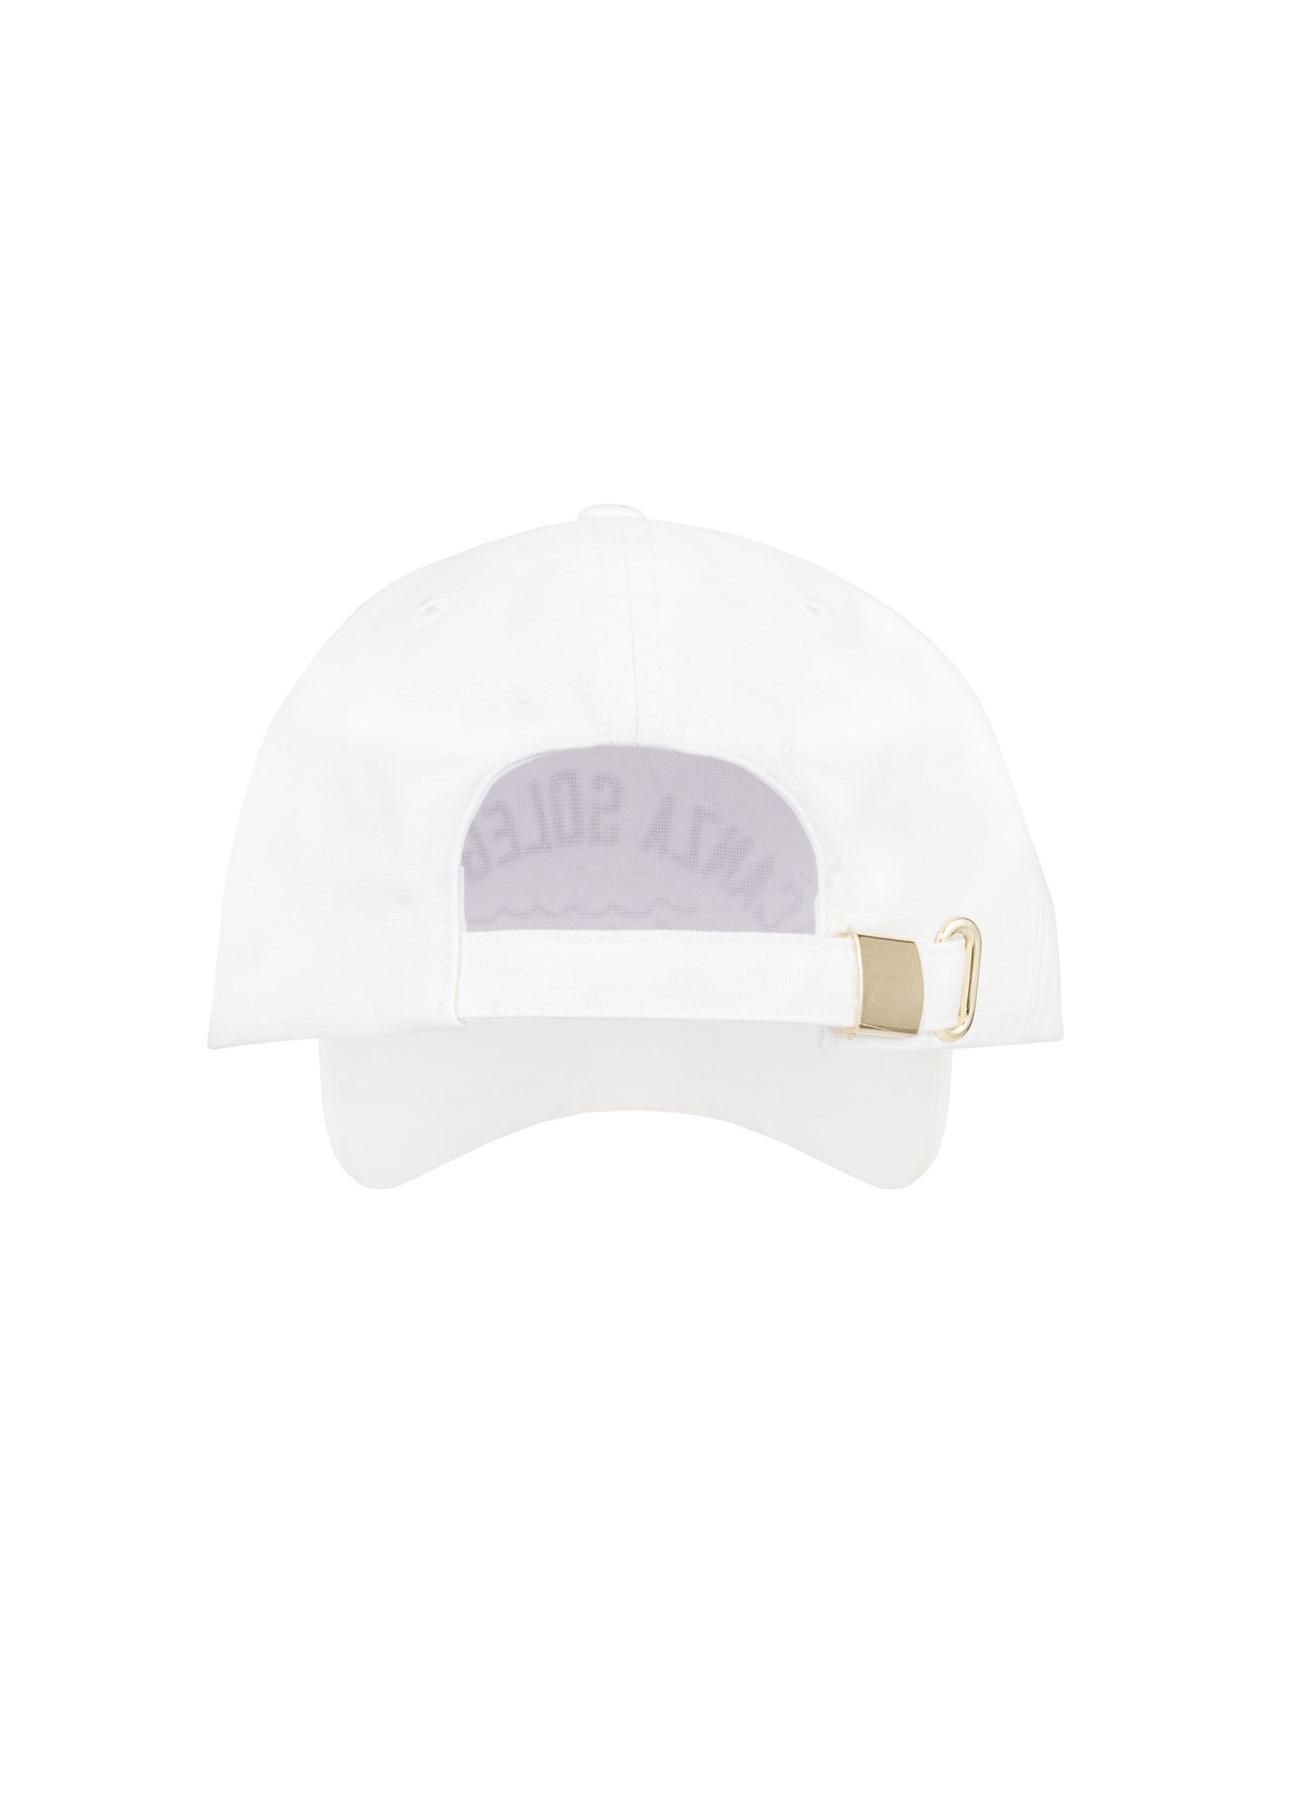 Biała czapka z daszkiem z printem CZALT-0005-12(W23)